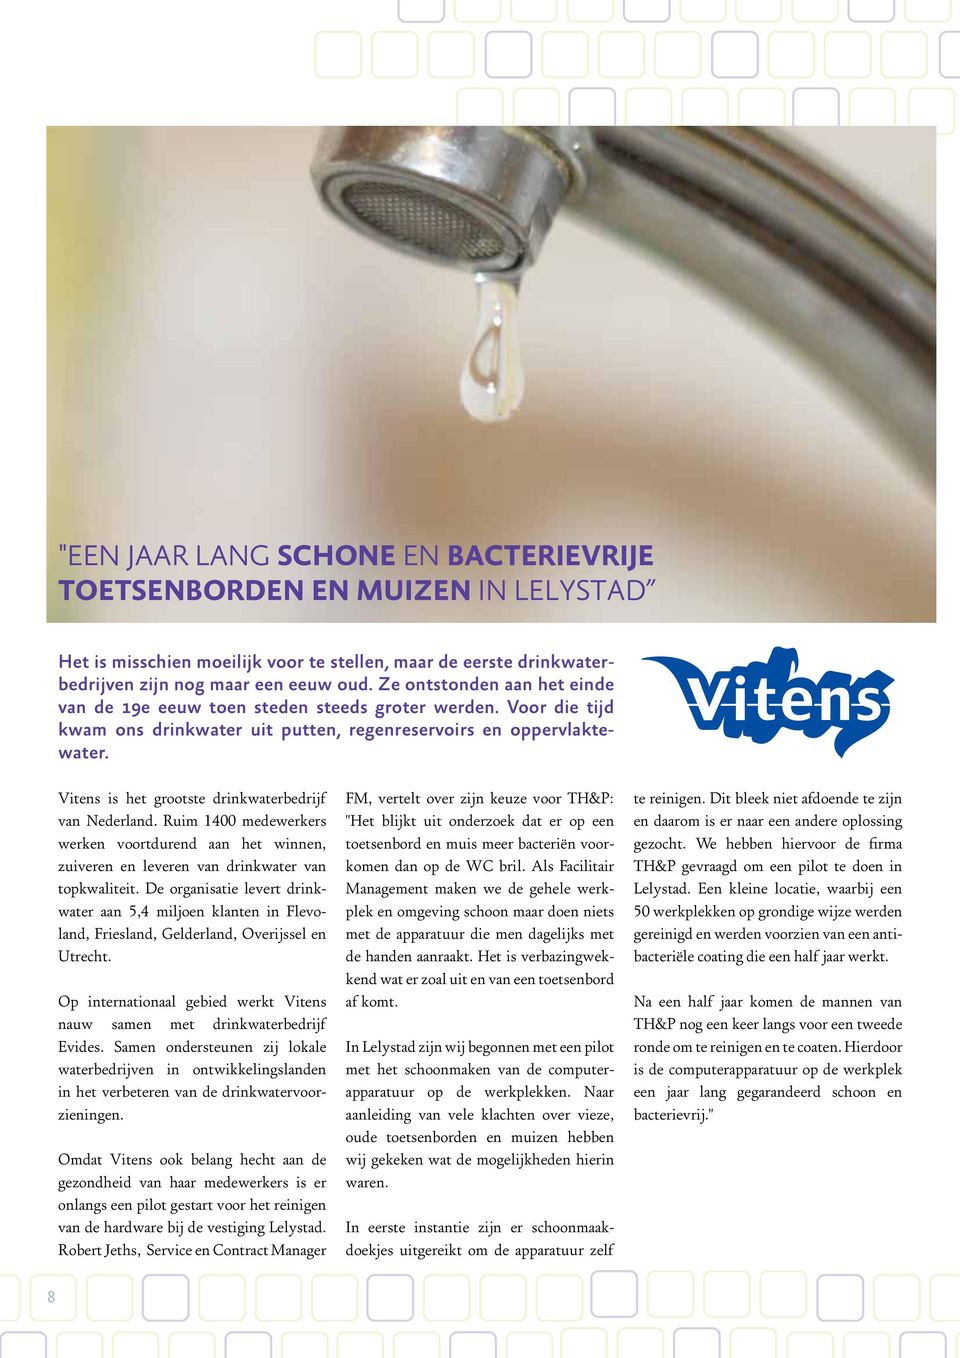 Vitens is het grootste drinkwaterbedrijf van Nederland. Ruim 1400 medewerkers werken voortdurend aan het winnen, zuiveren en leveren van drinkwater van topkwaliteit.